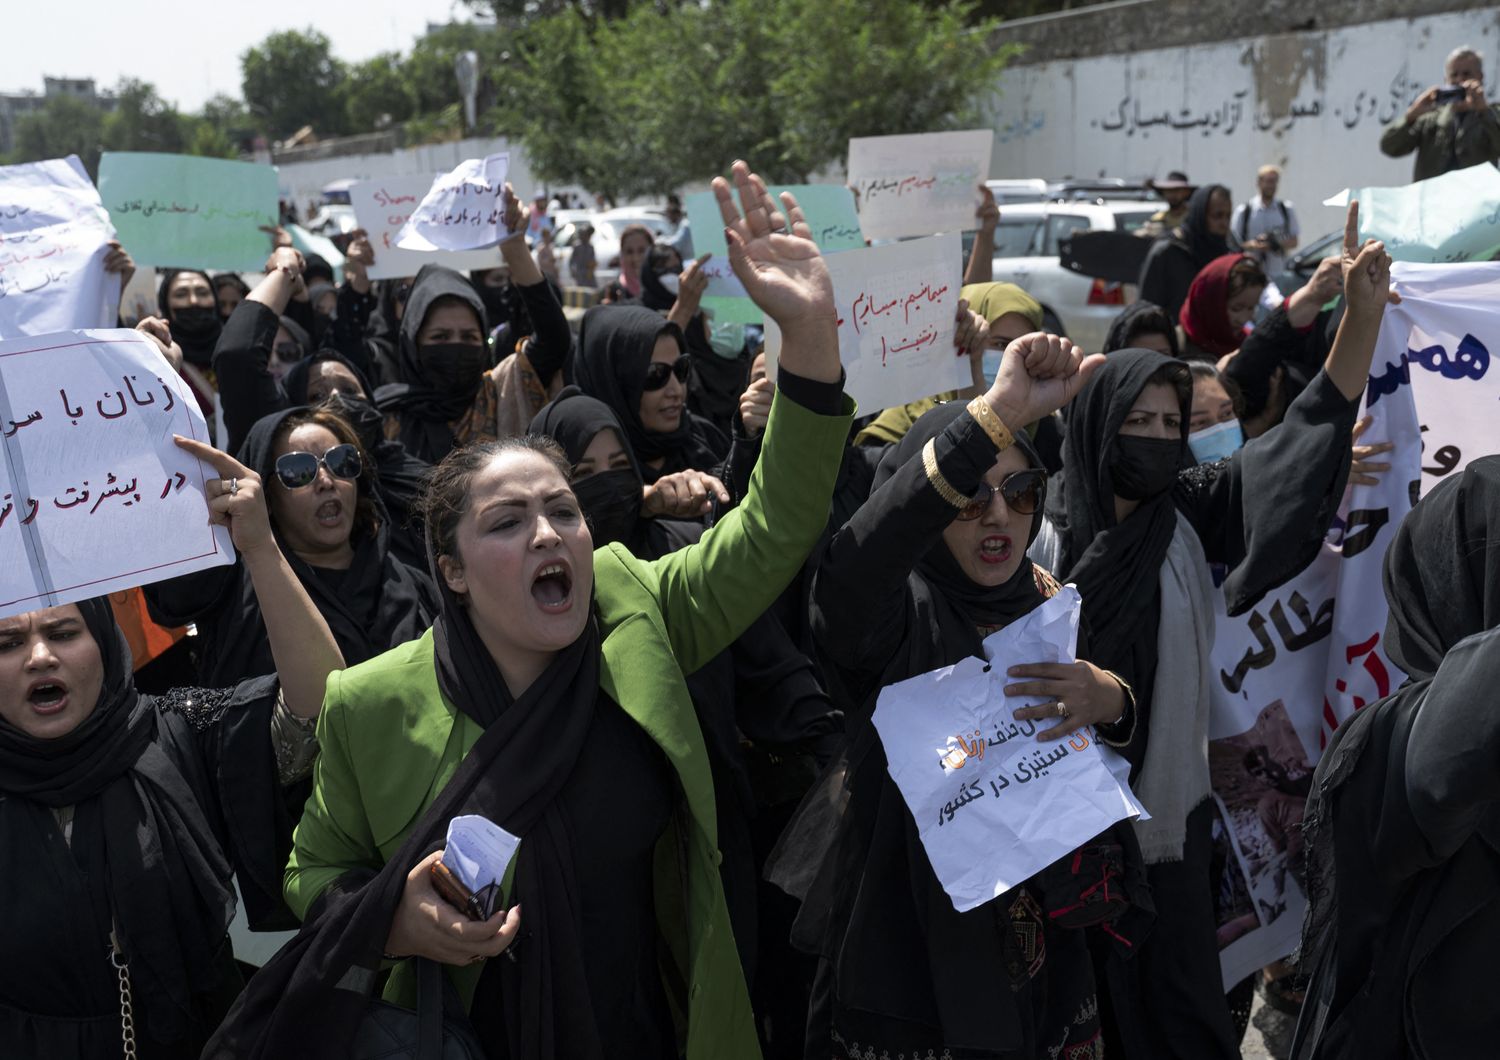 La manifestazione delle donne a Kabul a un anno dalla presa del potere dei talebani&nbsp;